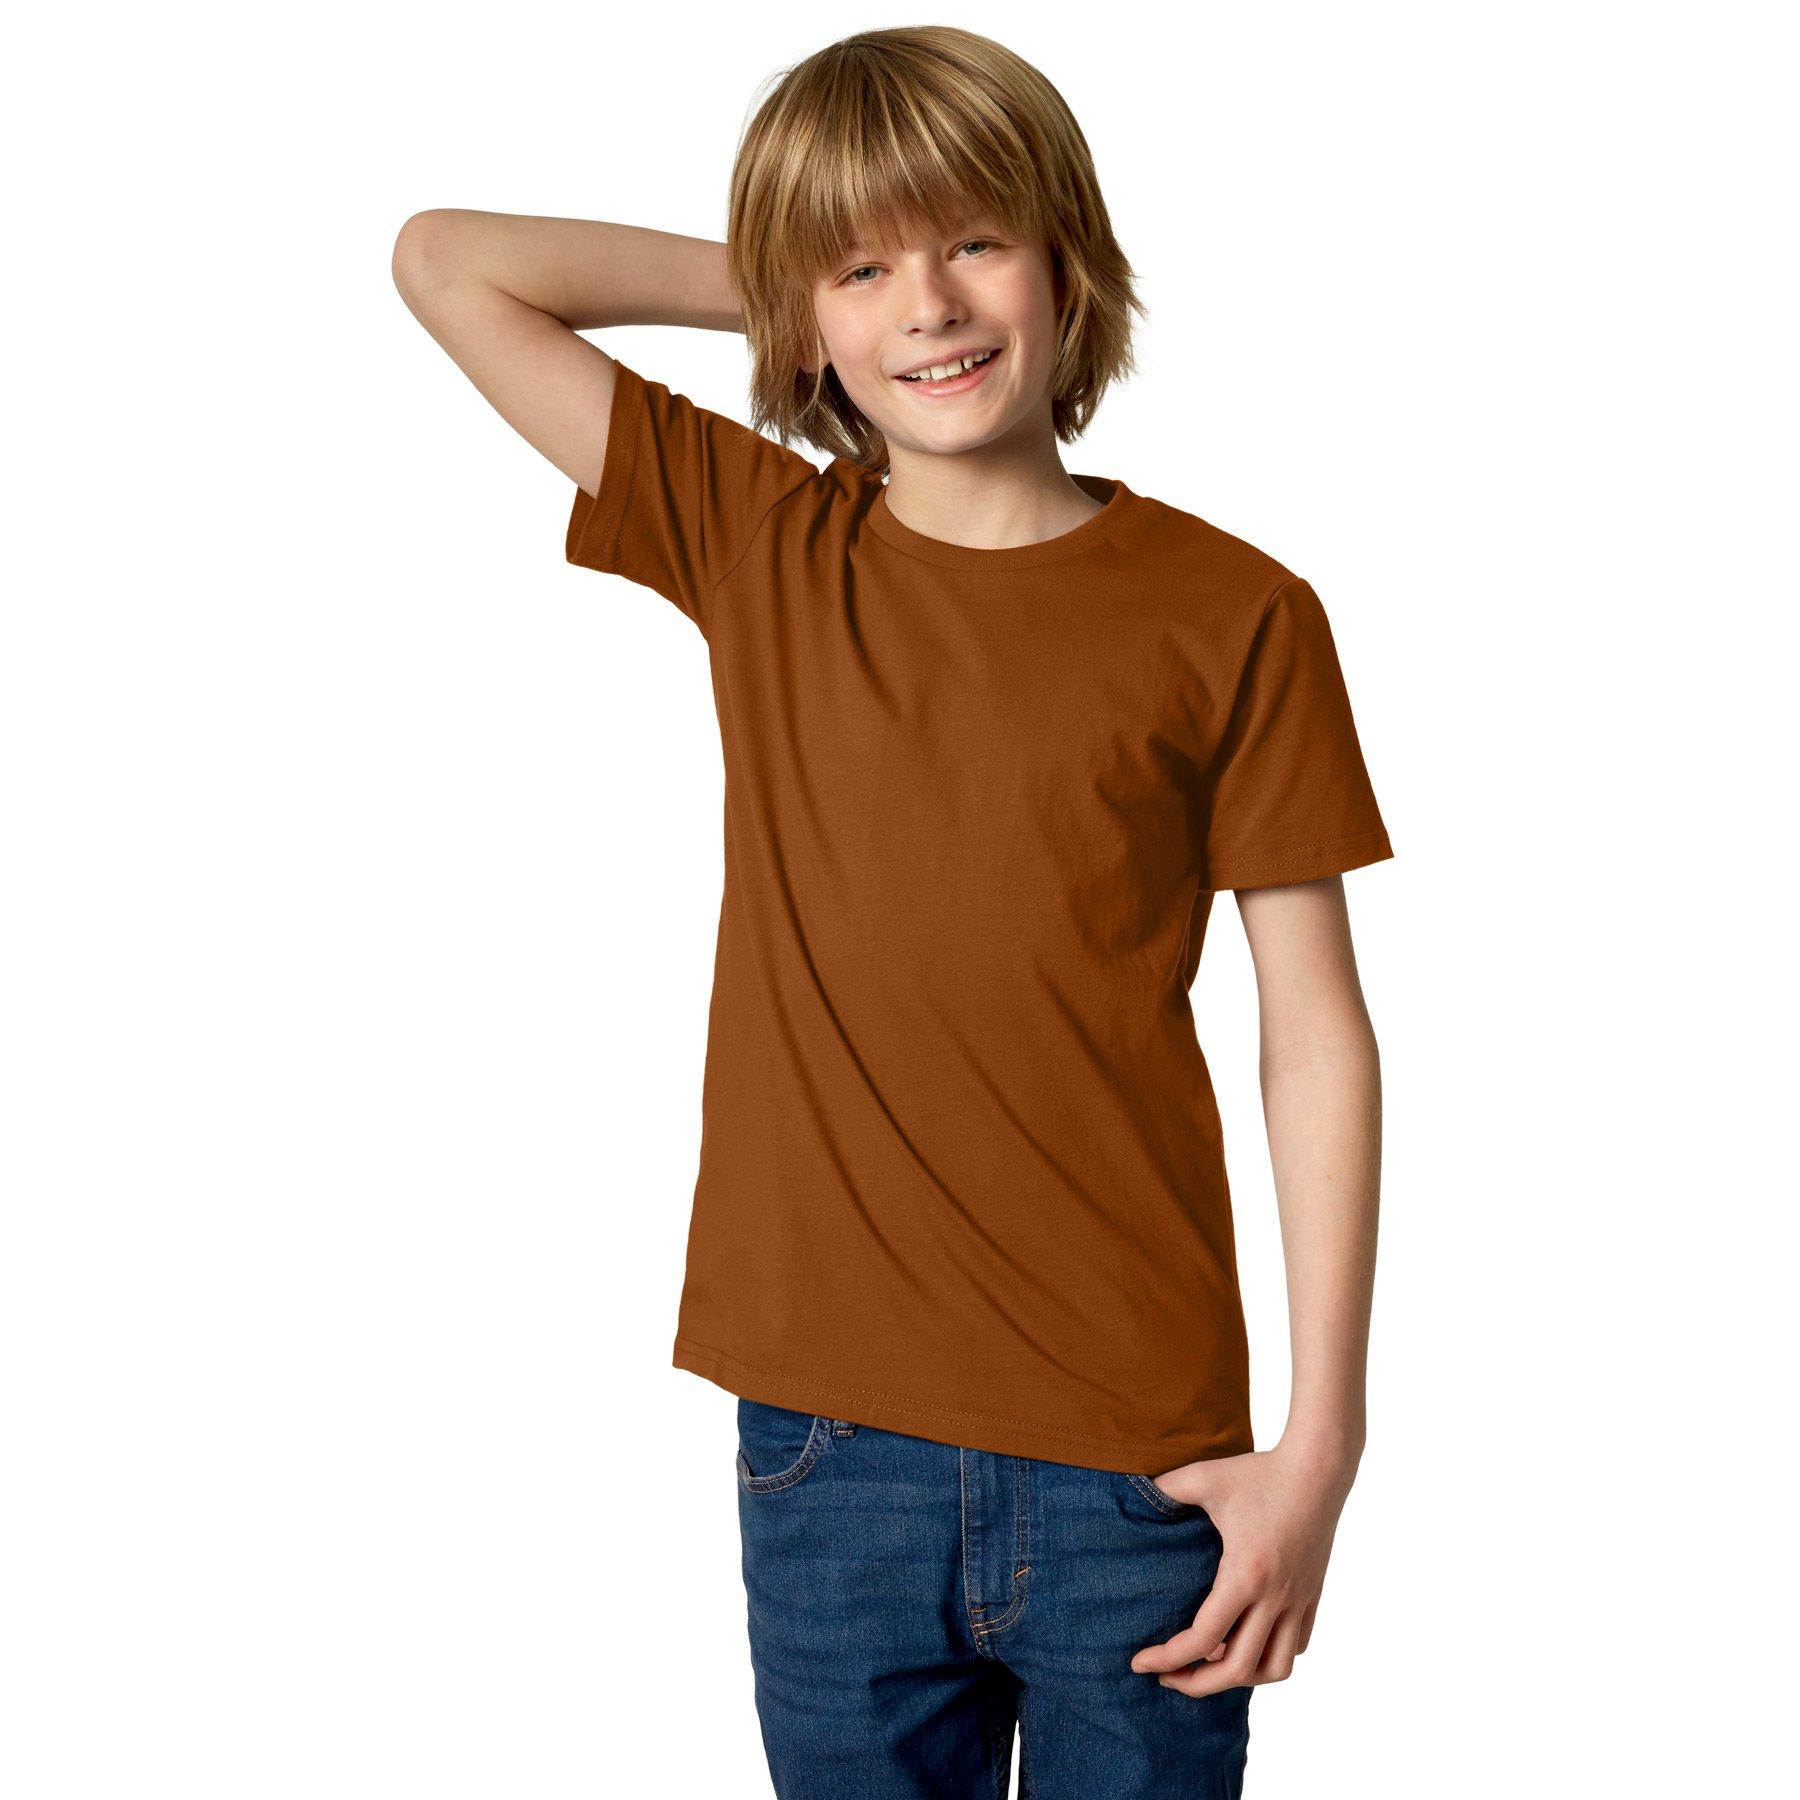 T-shirt Kinder Jungen Braun 152 von Tectake